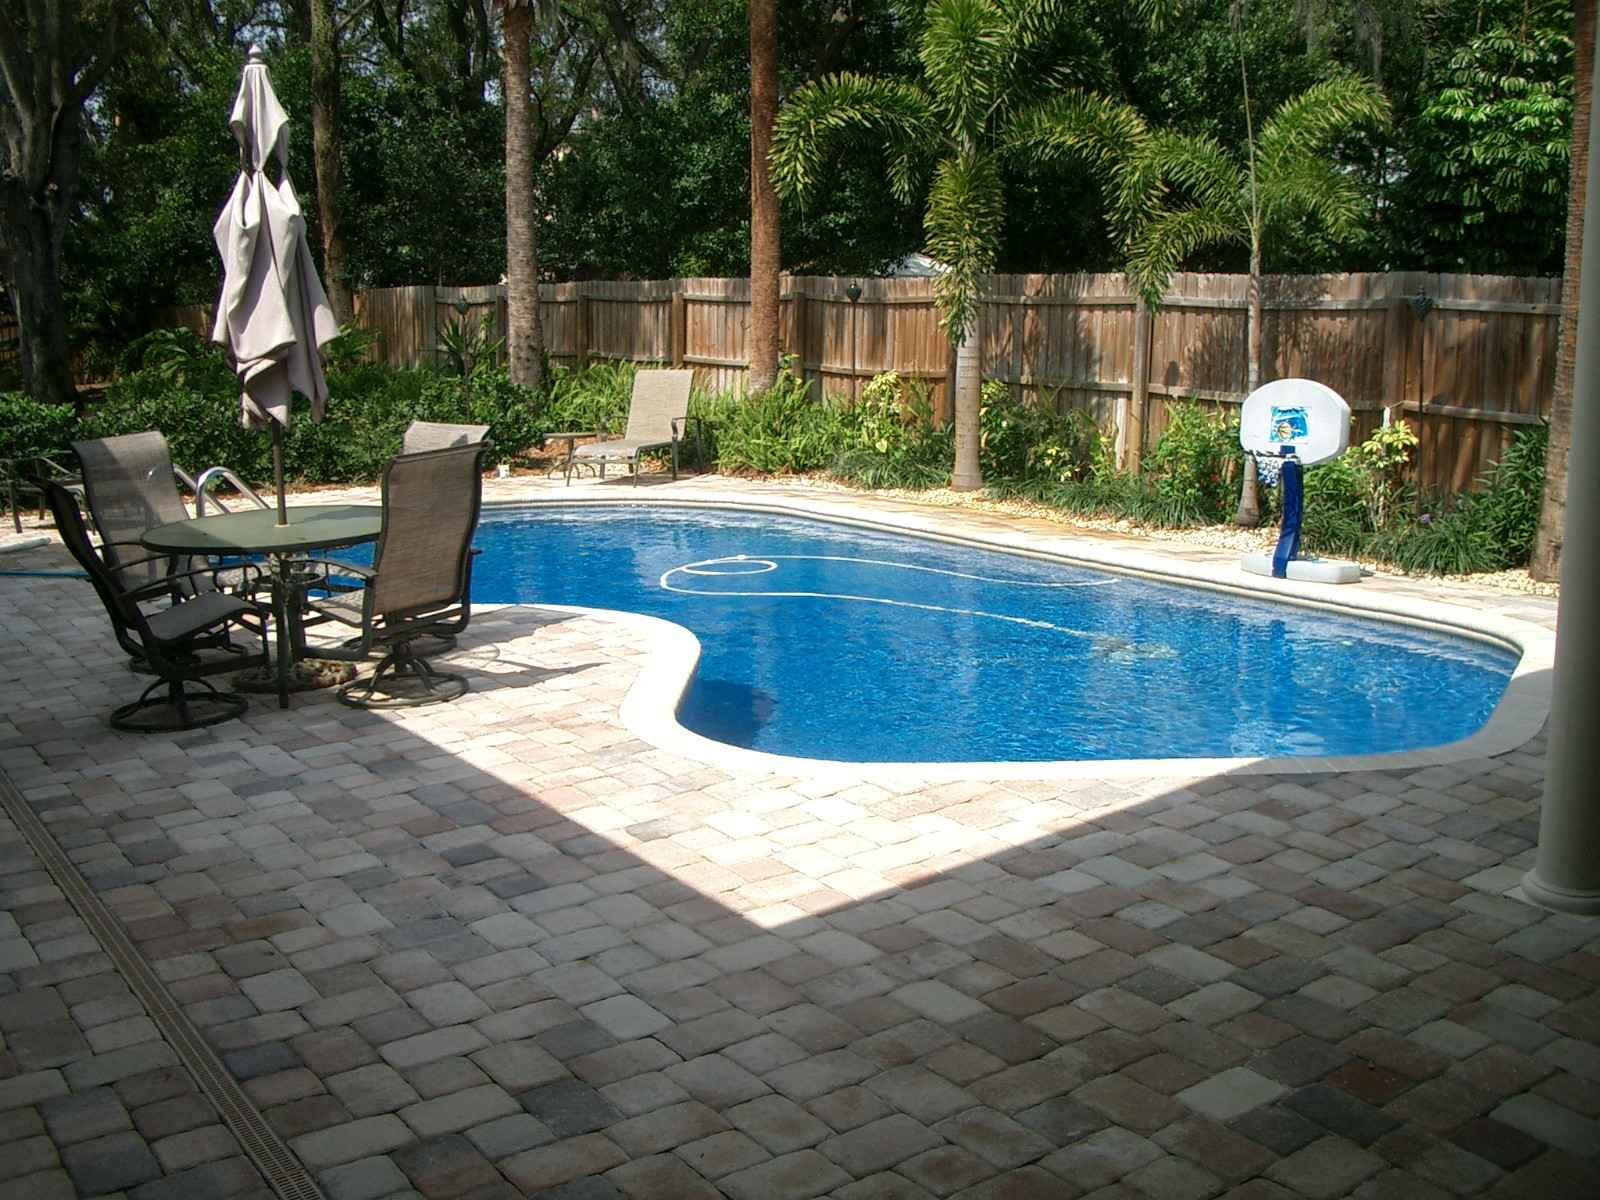 Pool Backyard Ideas
 35 Best Backyard Pool Ideas – The WoW Style